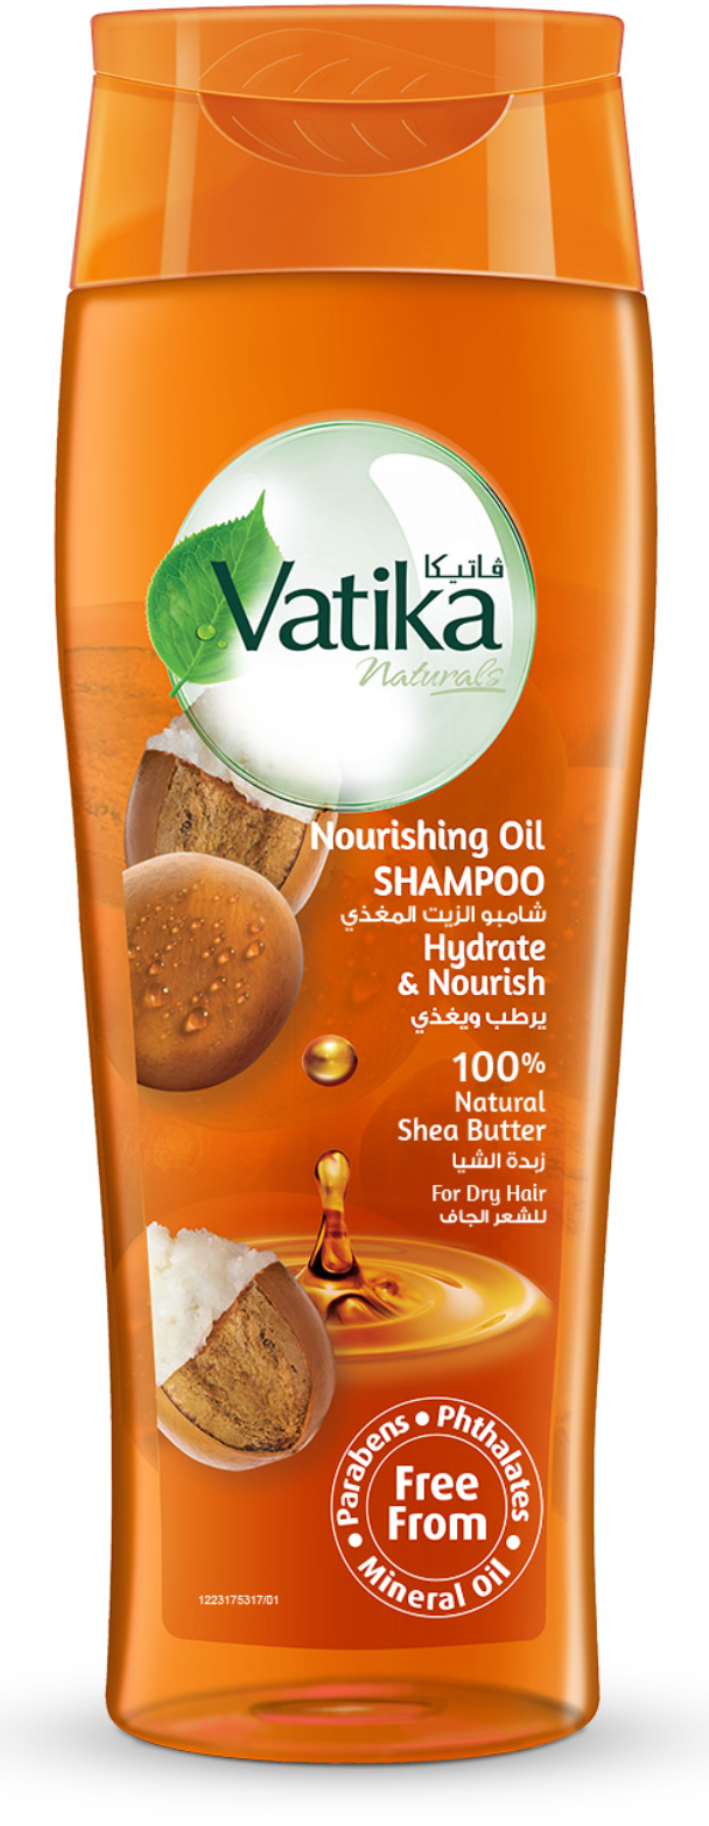 Шампунь для волос Dabur Vatika Nourishing Oil Shea Shampoo с питательным маслом Ши 425 мл шампунь здоровые волосы чайное дерево и ромашка tea tree chamomile herbal shampoo 120 2558 04 1000 мл